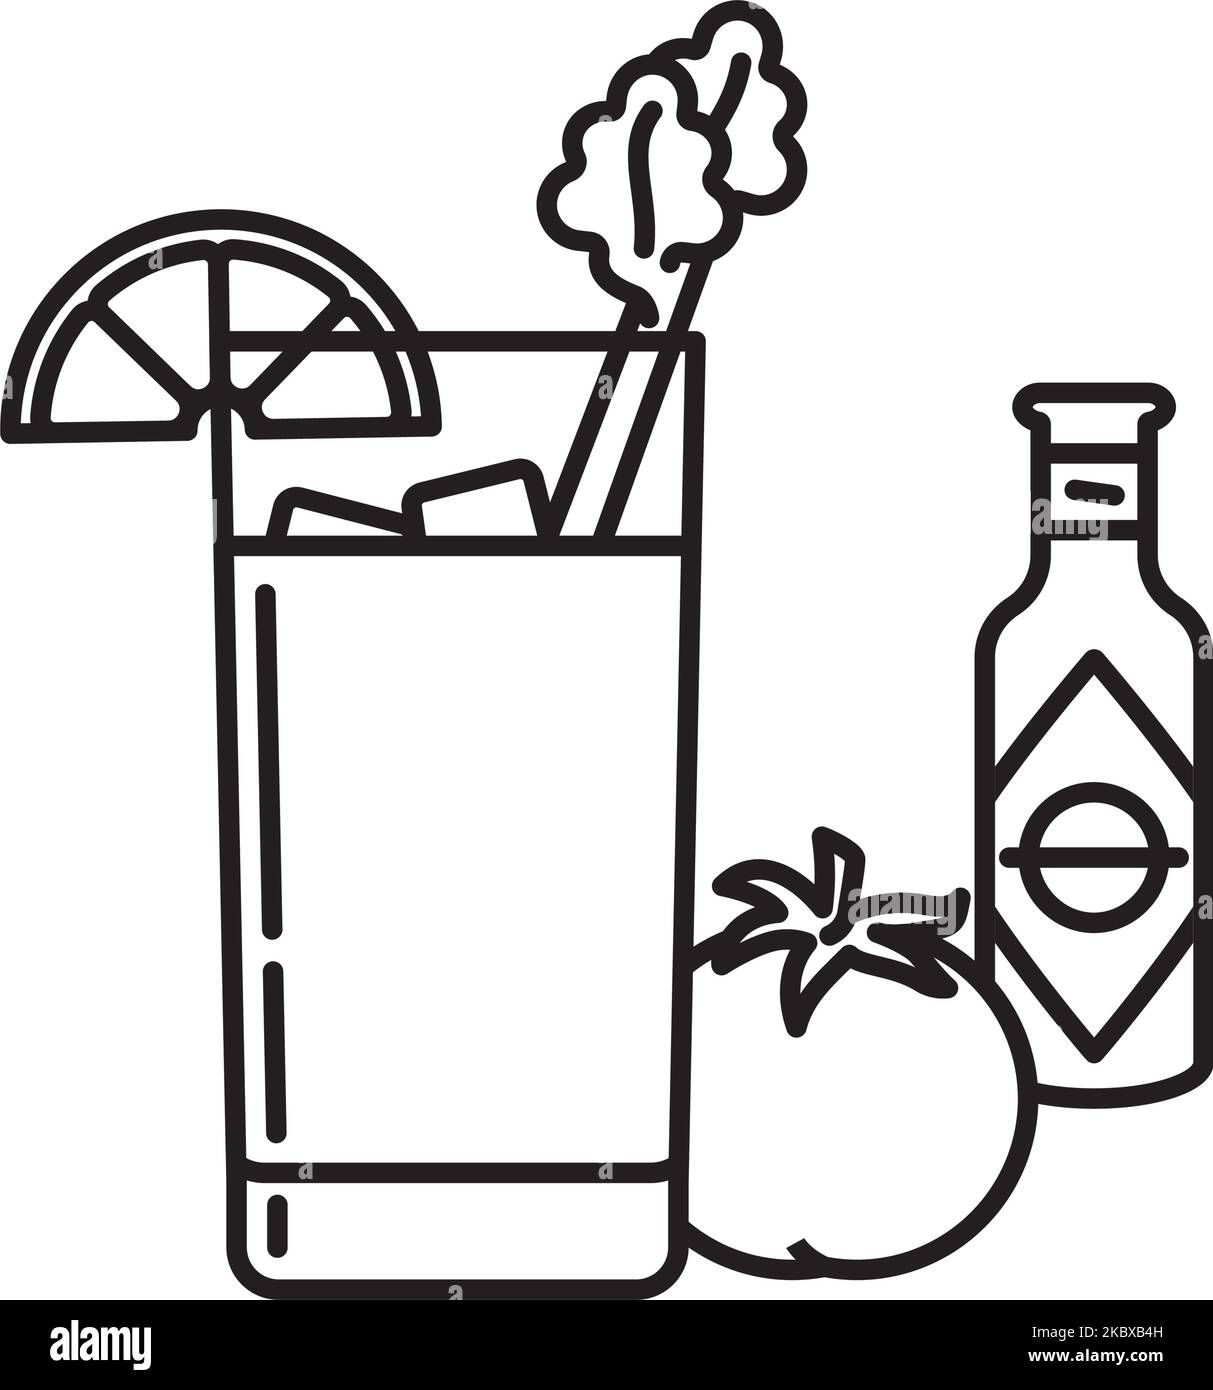 Cóctel Bloody Mary con pedazo de limón y tallo de apio, tomate y botella de salsa caliente icono de la línea vectorial Ilustración del Vector